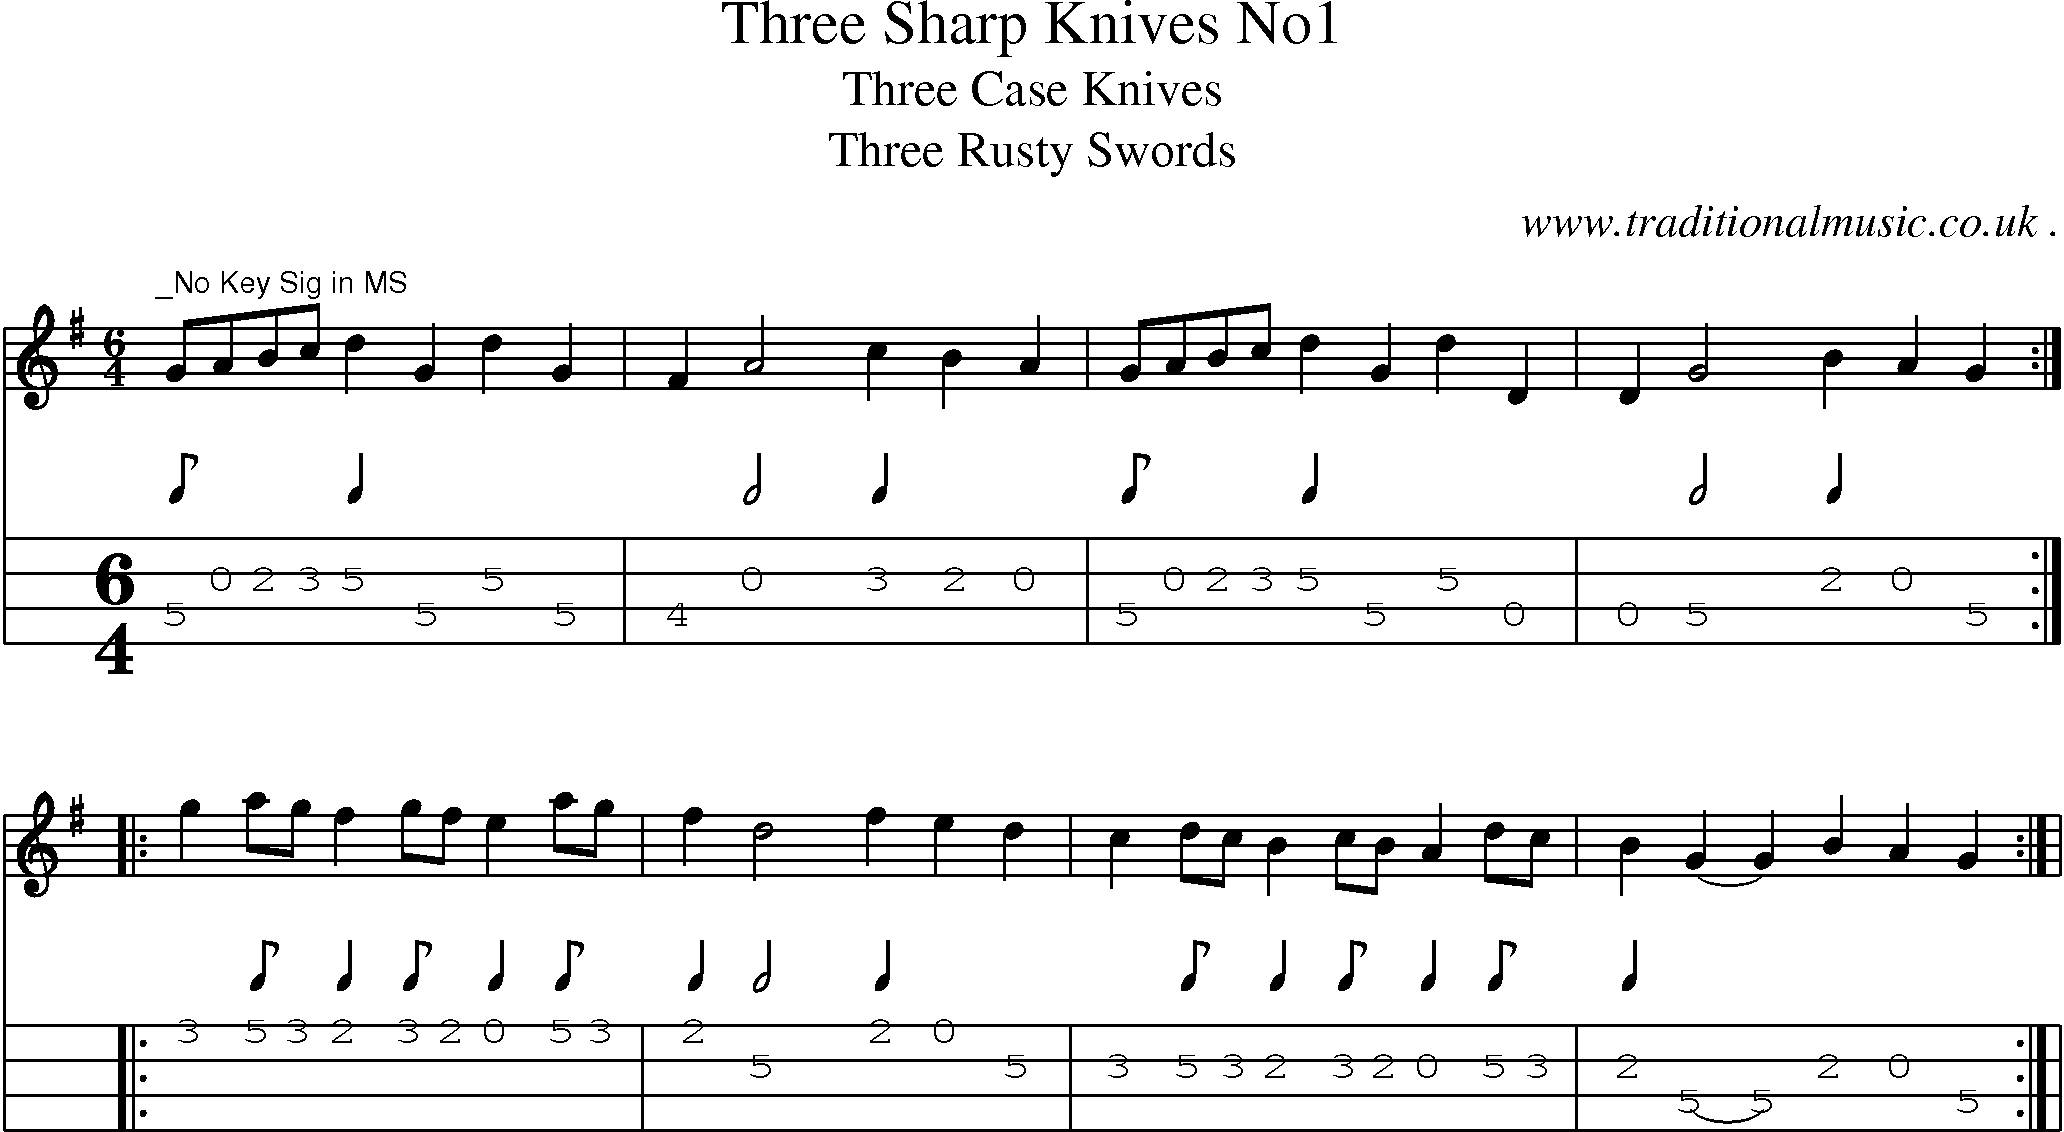 Sheet-Music and Mandolin Tabs for Three Sharp Knives No1